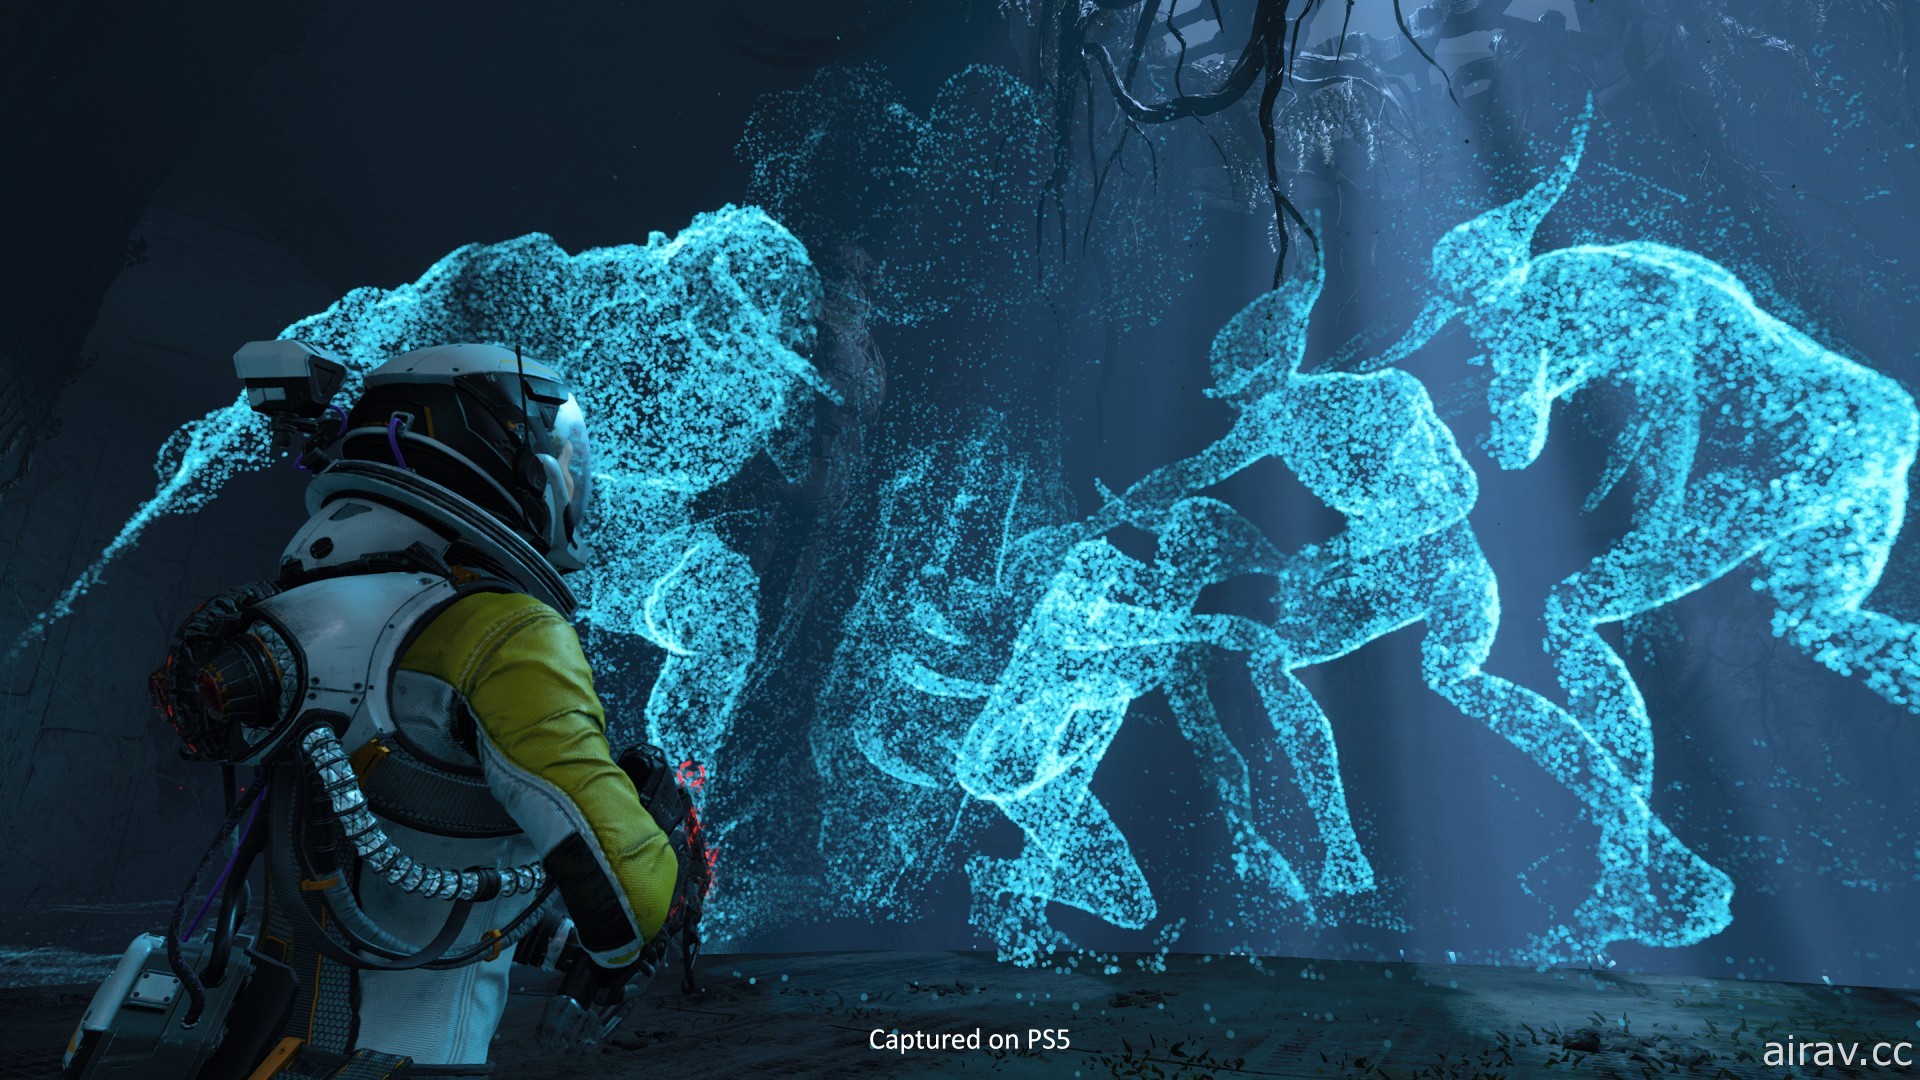 《死亡回歸》製作團隊專訪 結合 Roguelike 玩法展現 PS5 強大硬體效能